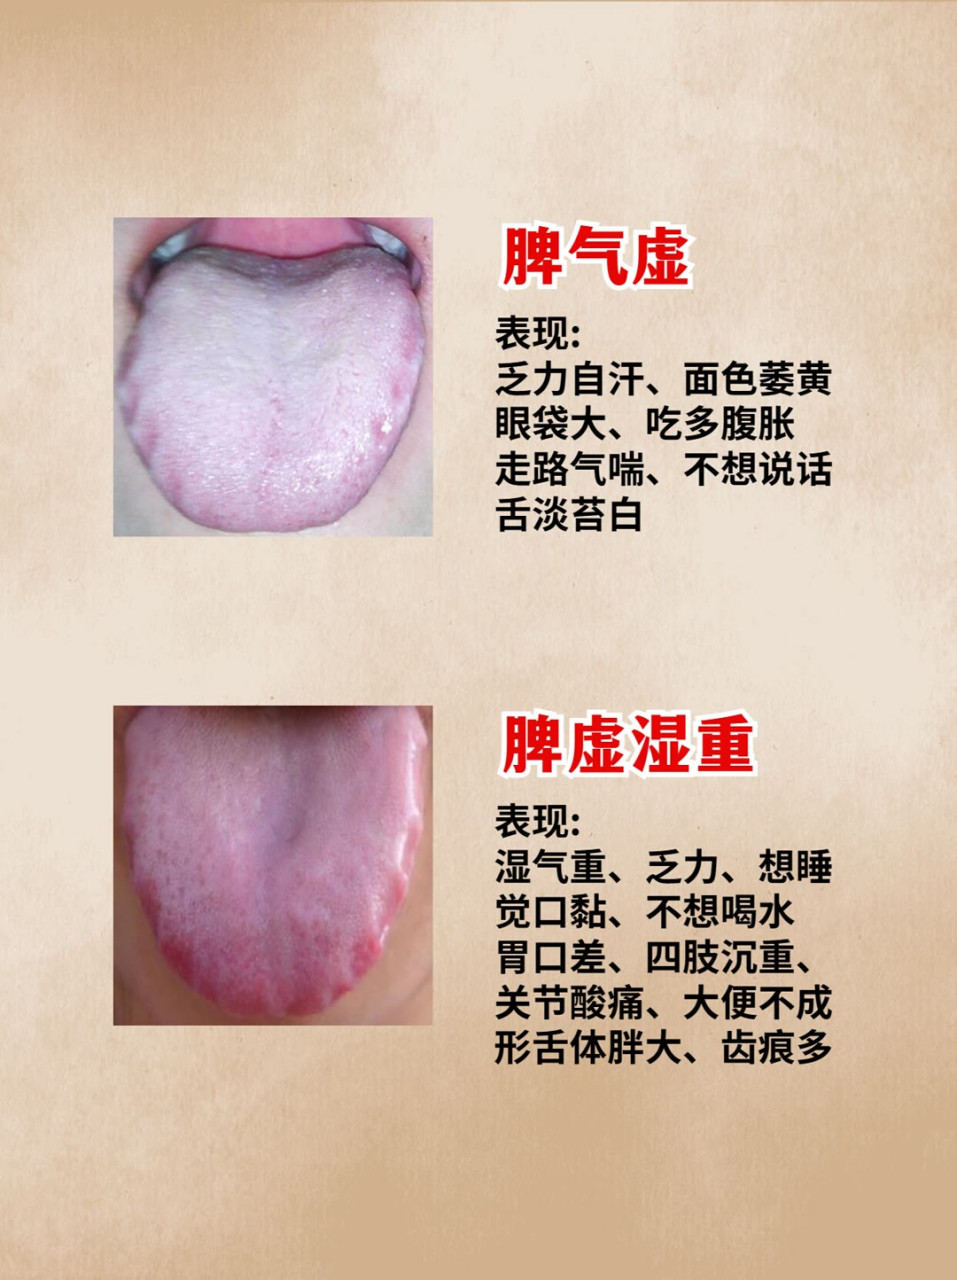 脾胃虚弱的6种证型,对照舌苔,看看你是哪一种?